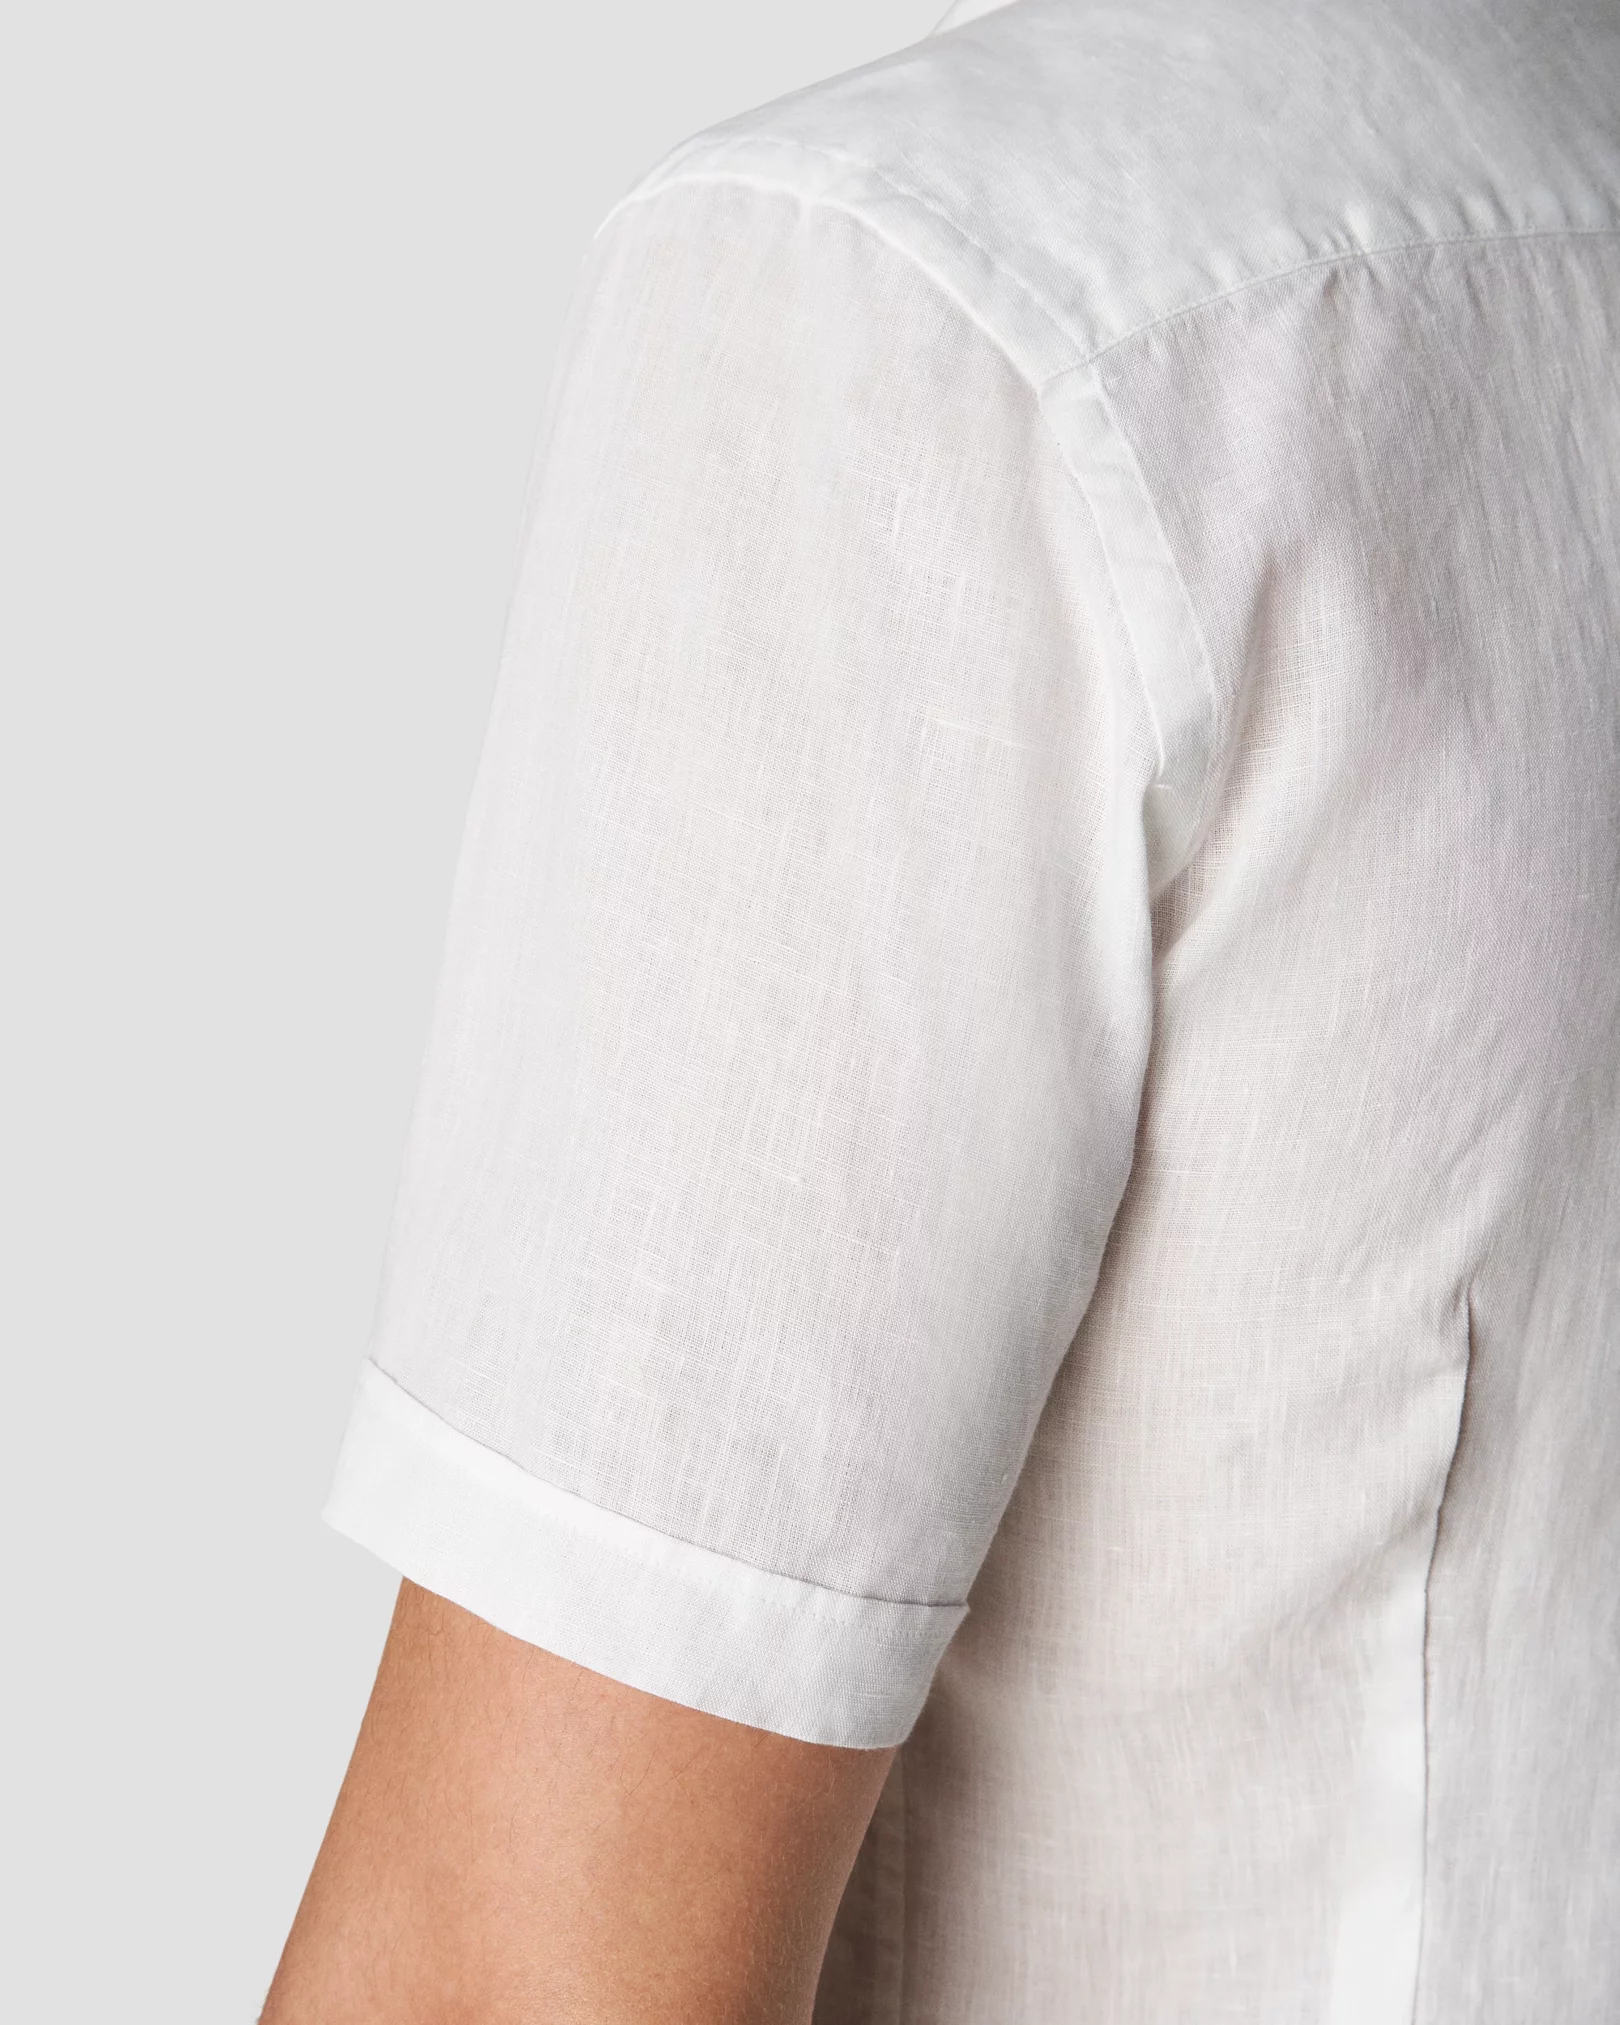 Short Sleeve Solid Linen Button Down Shirt